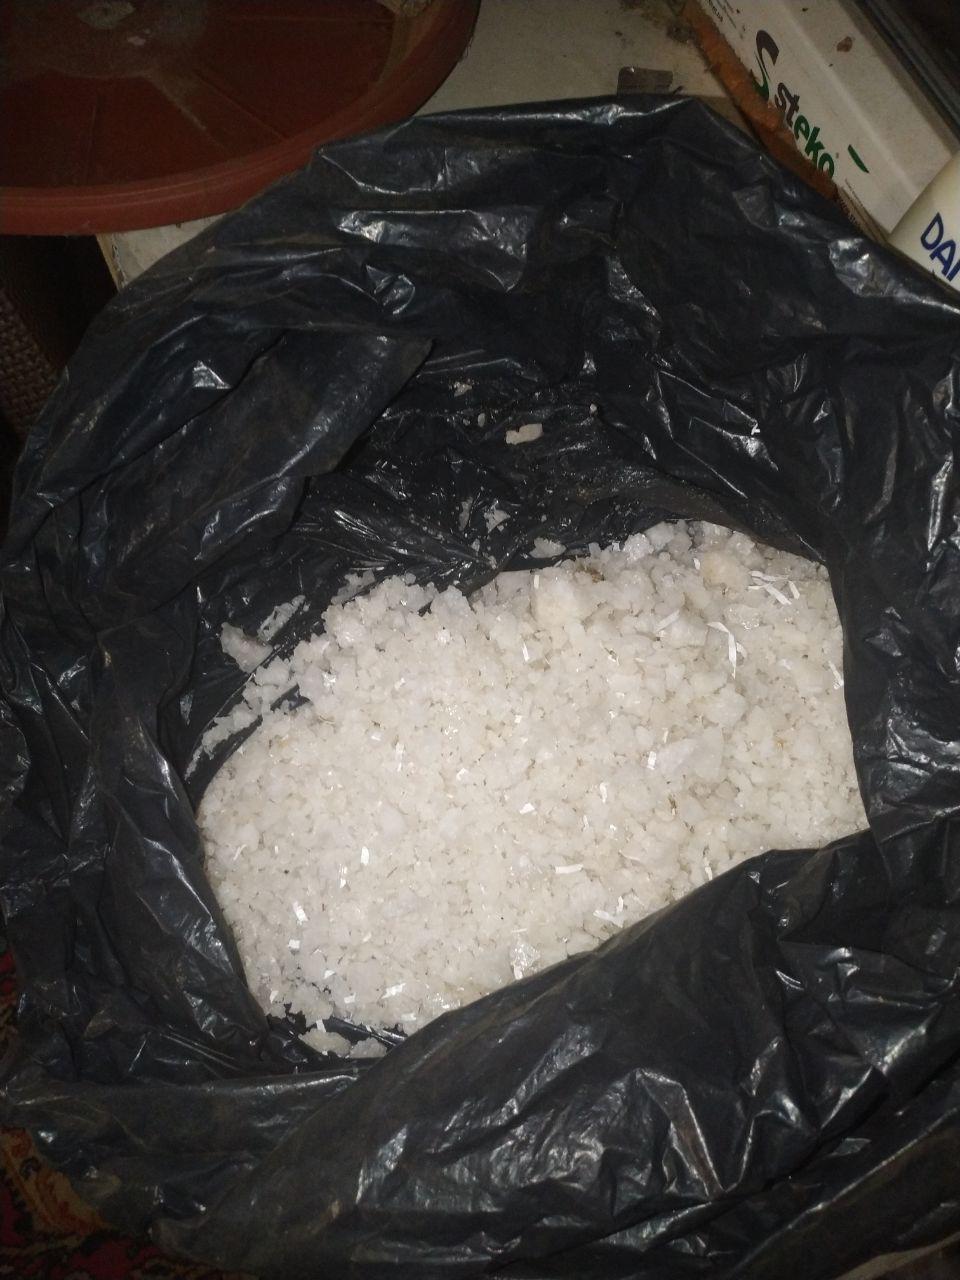 8  нарколабораторій та 40 кг наркотиків  - на Чернігівщині викрито організовану злочинну групу (ФОТО)